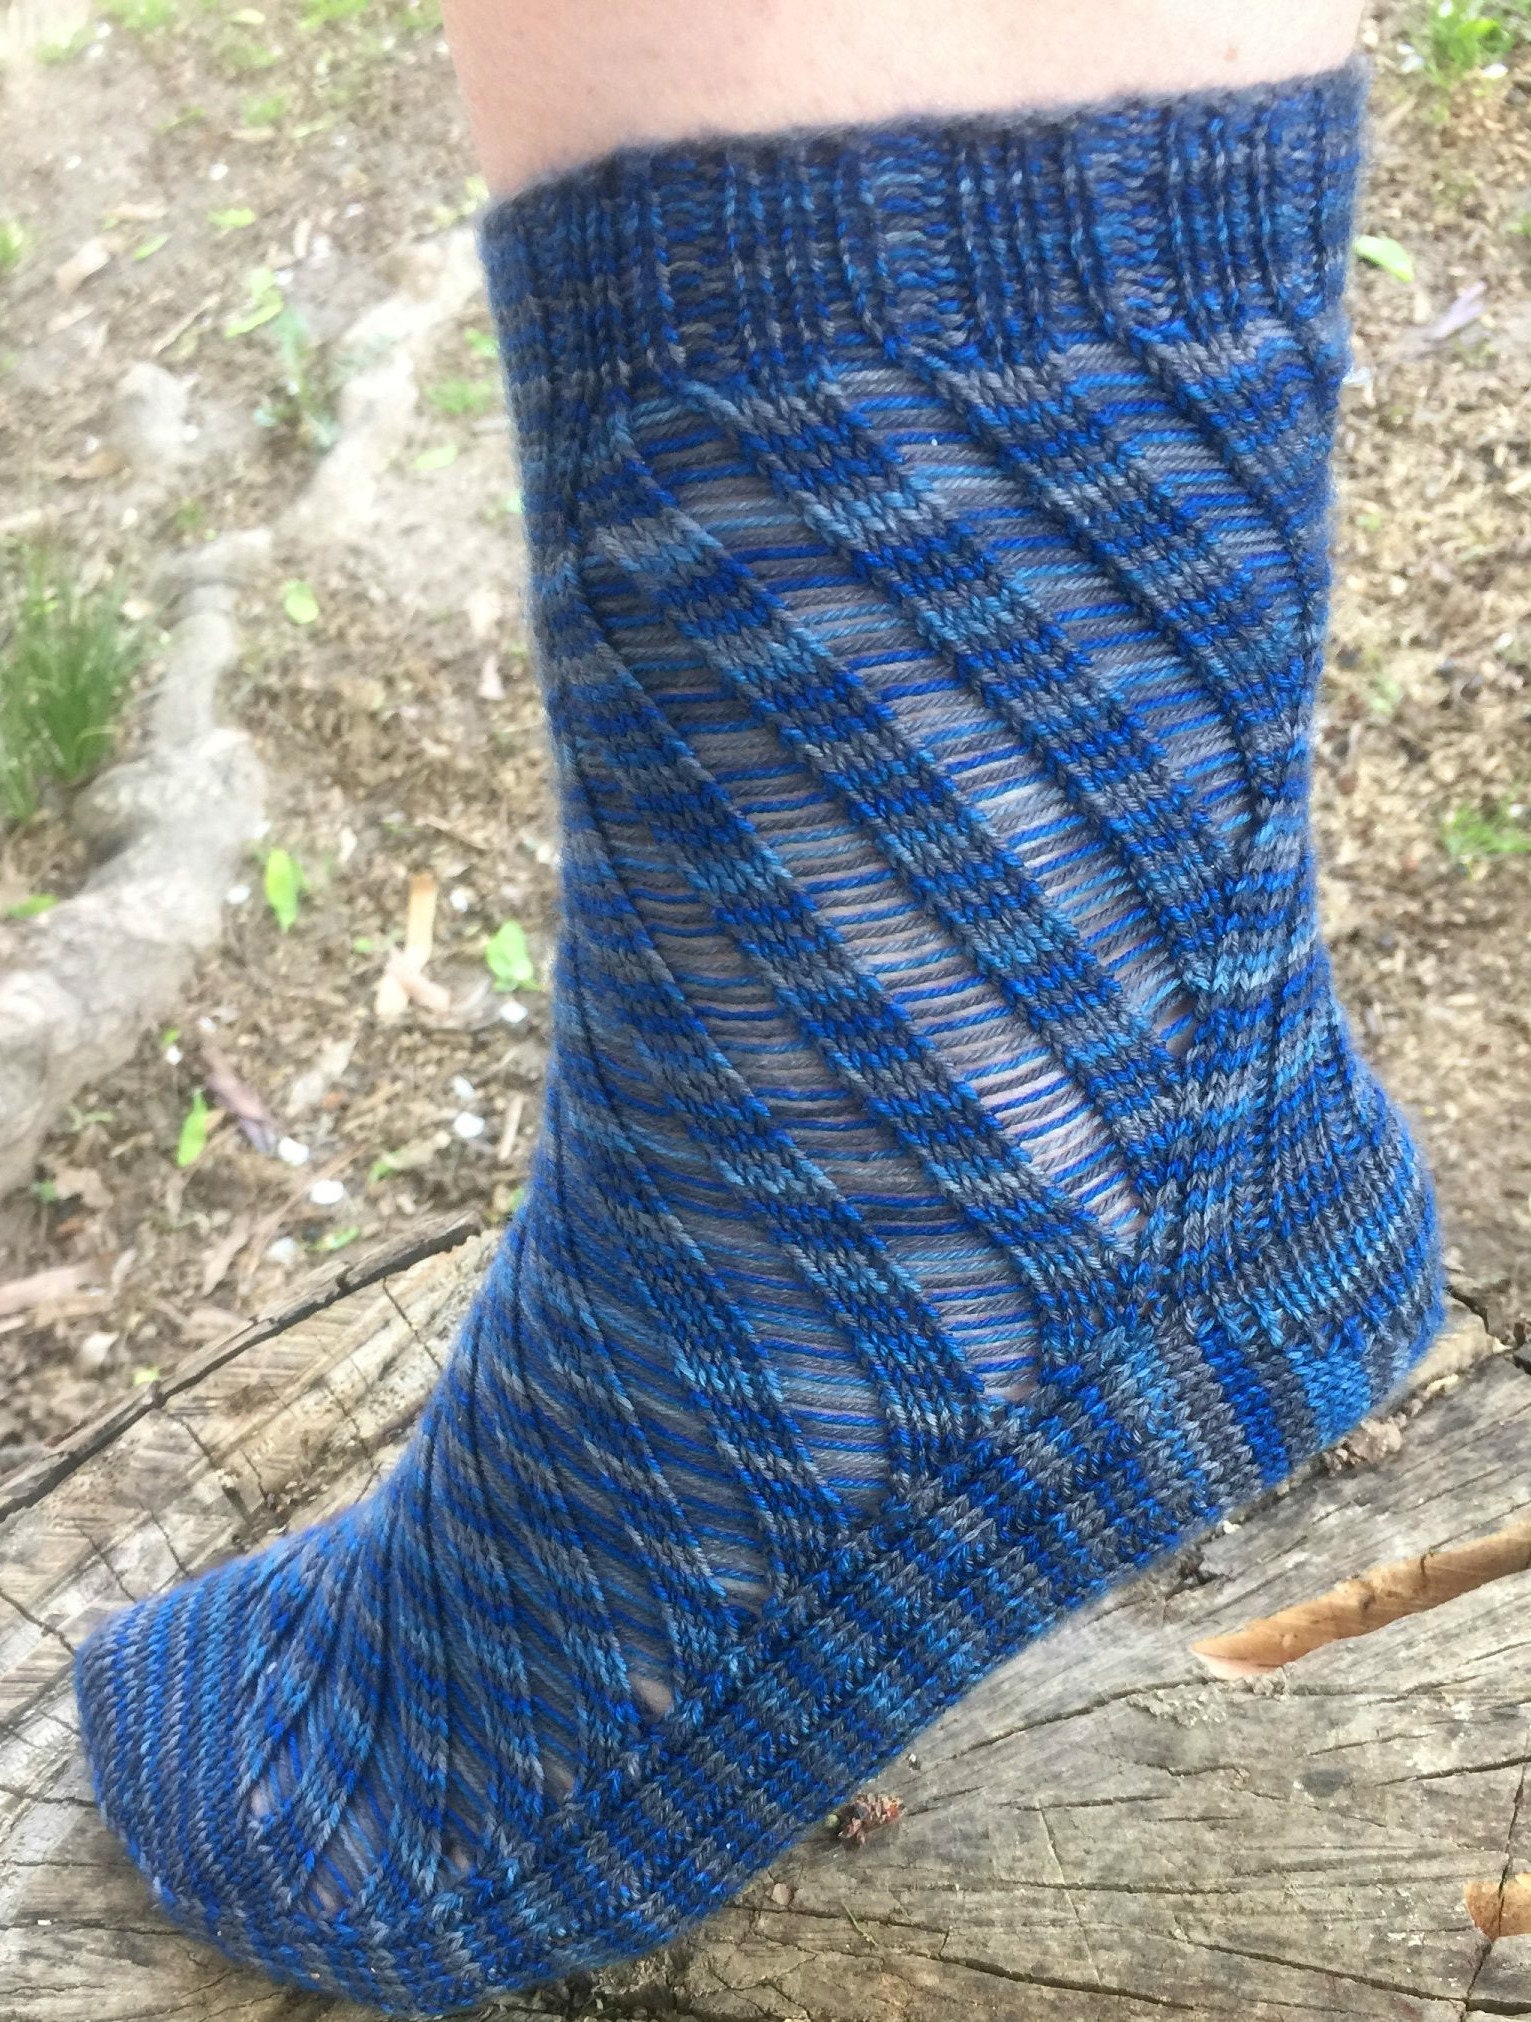 Mountaineer ophavsret lettelse Knitting PATTERN Trust Fall Socks / Top Down Knit Socks / - Etsy